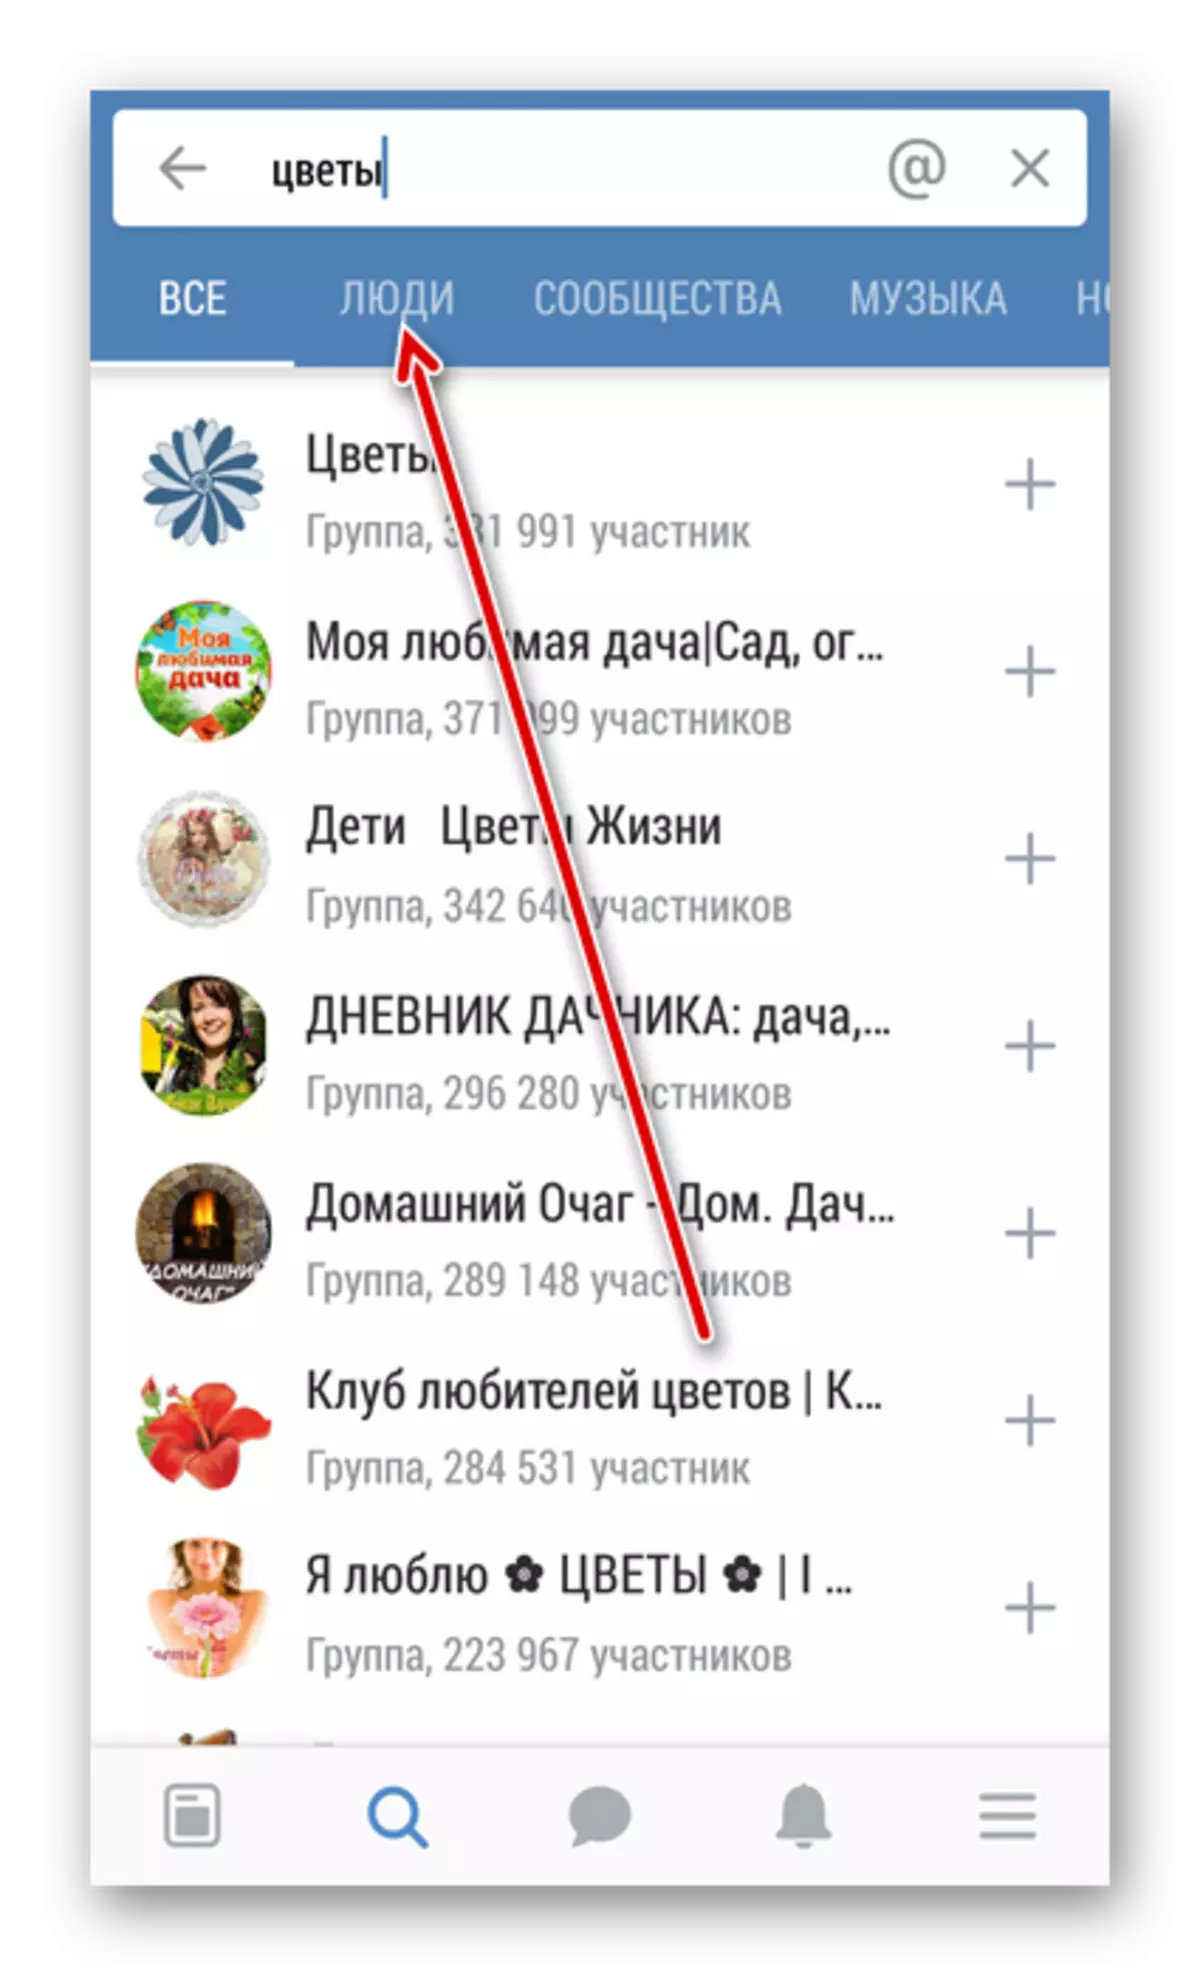 Newidiwch i chwilio am bobl yn y cais Vkontakte